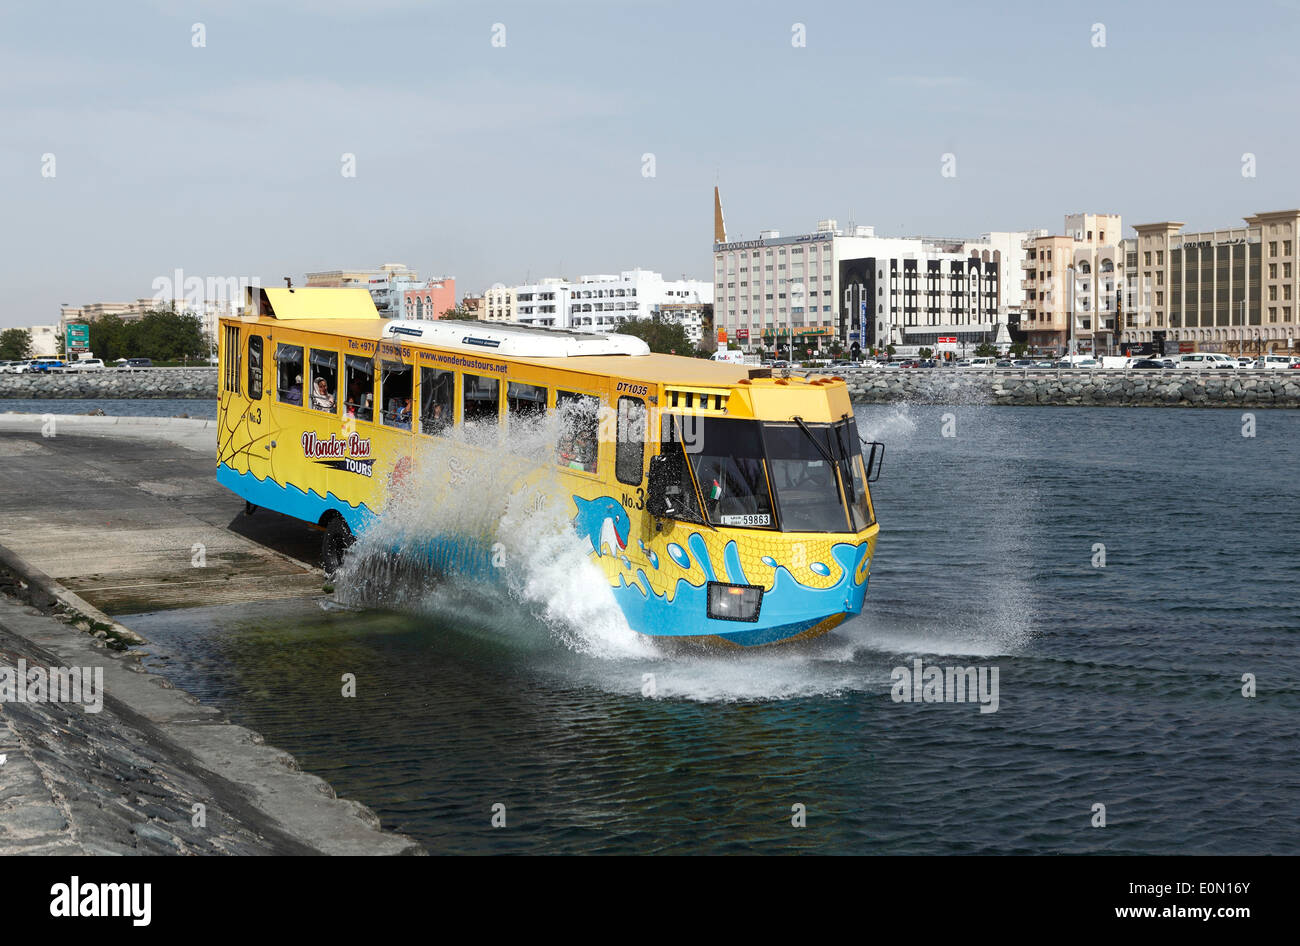 Stadtrundfahrt mit dem Wonderbus am Dubai Creek, Vereinigte Arabische Emirate Stockfoto